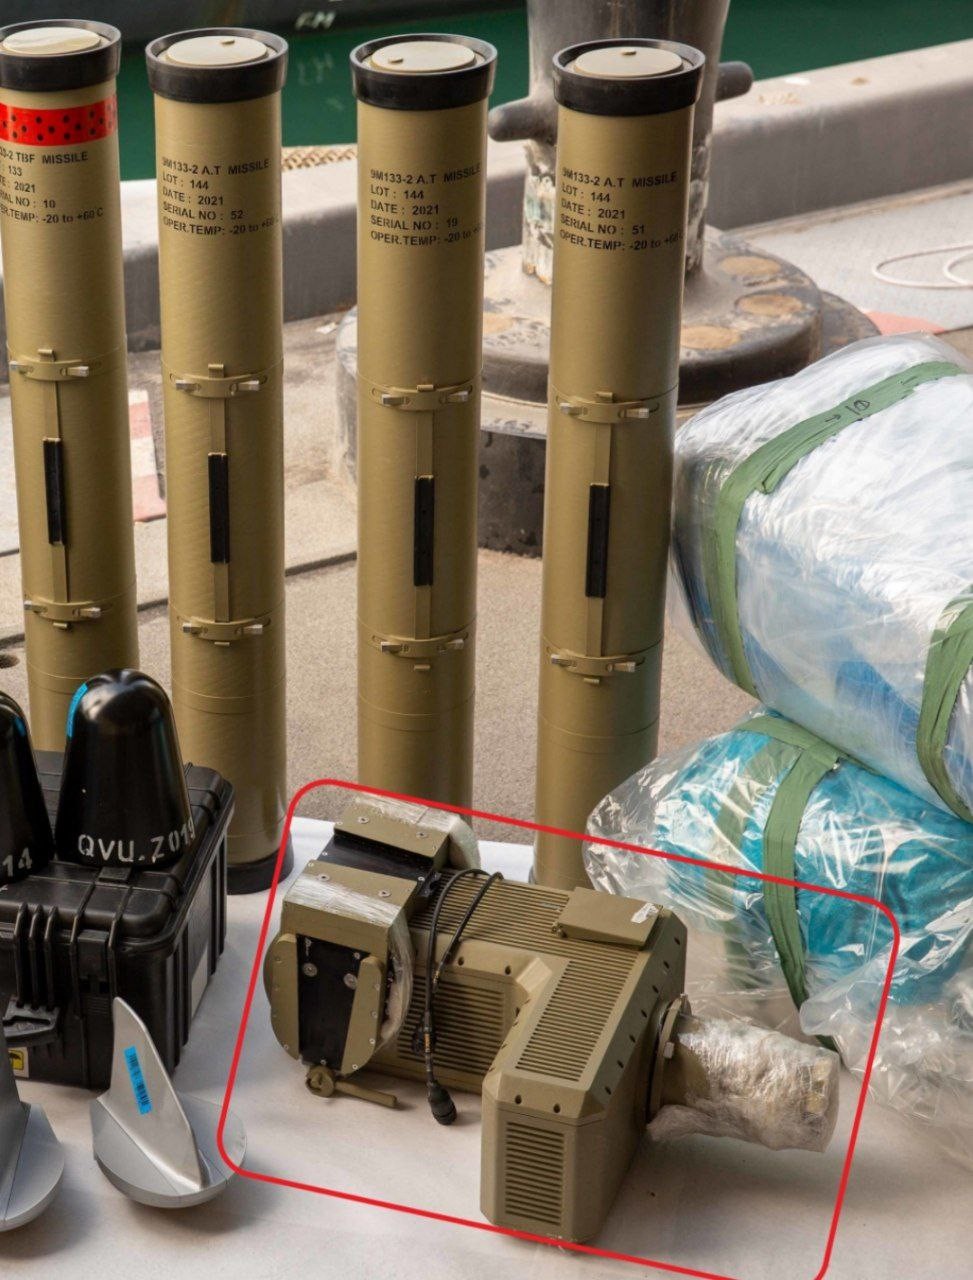 البحرية الأميركية عثرت على أسلحة إيرانية ومكونات صواريخ في الشحنة المتوجهة إلى اليمن